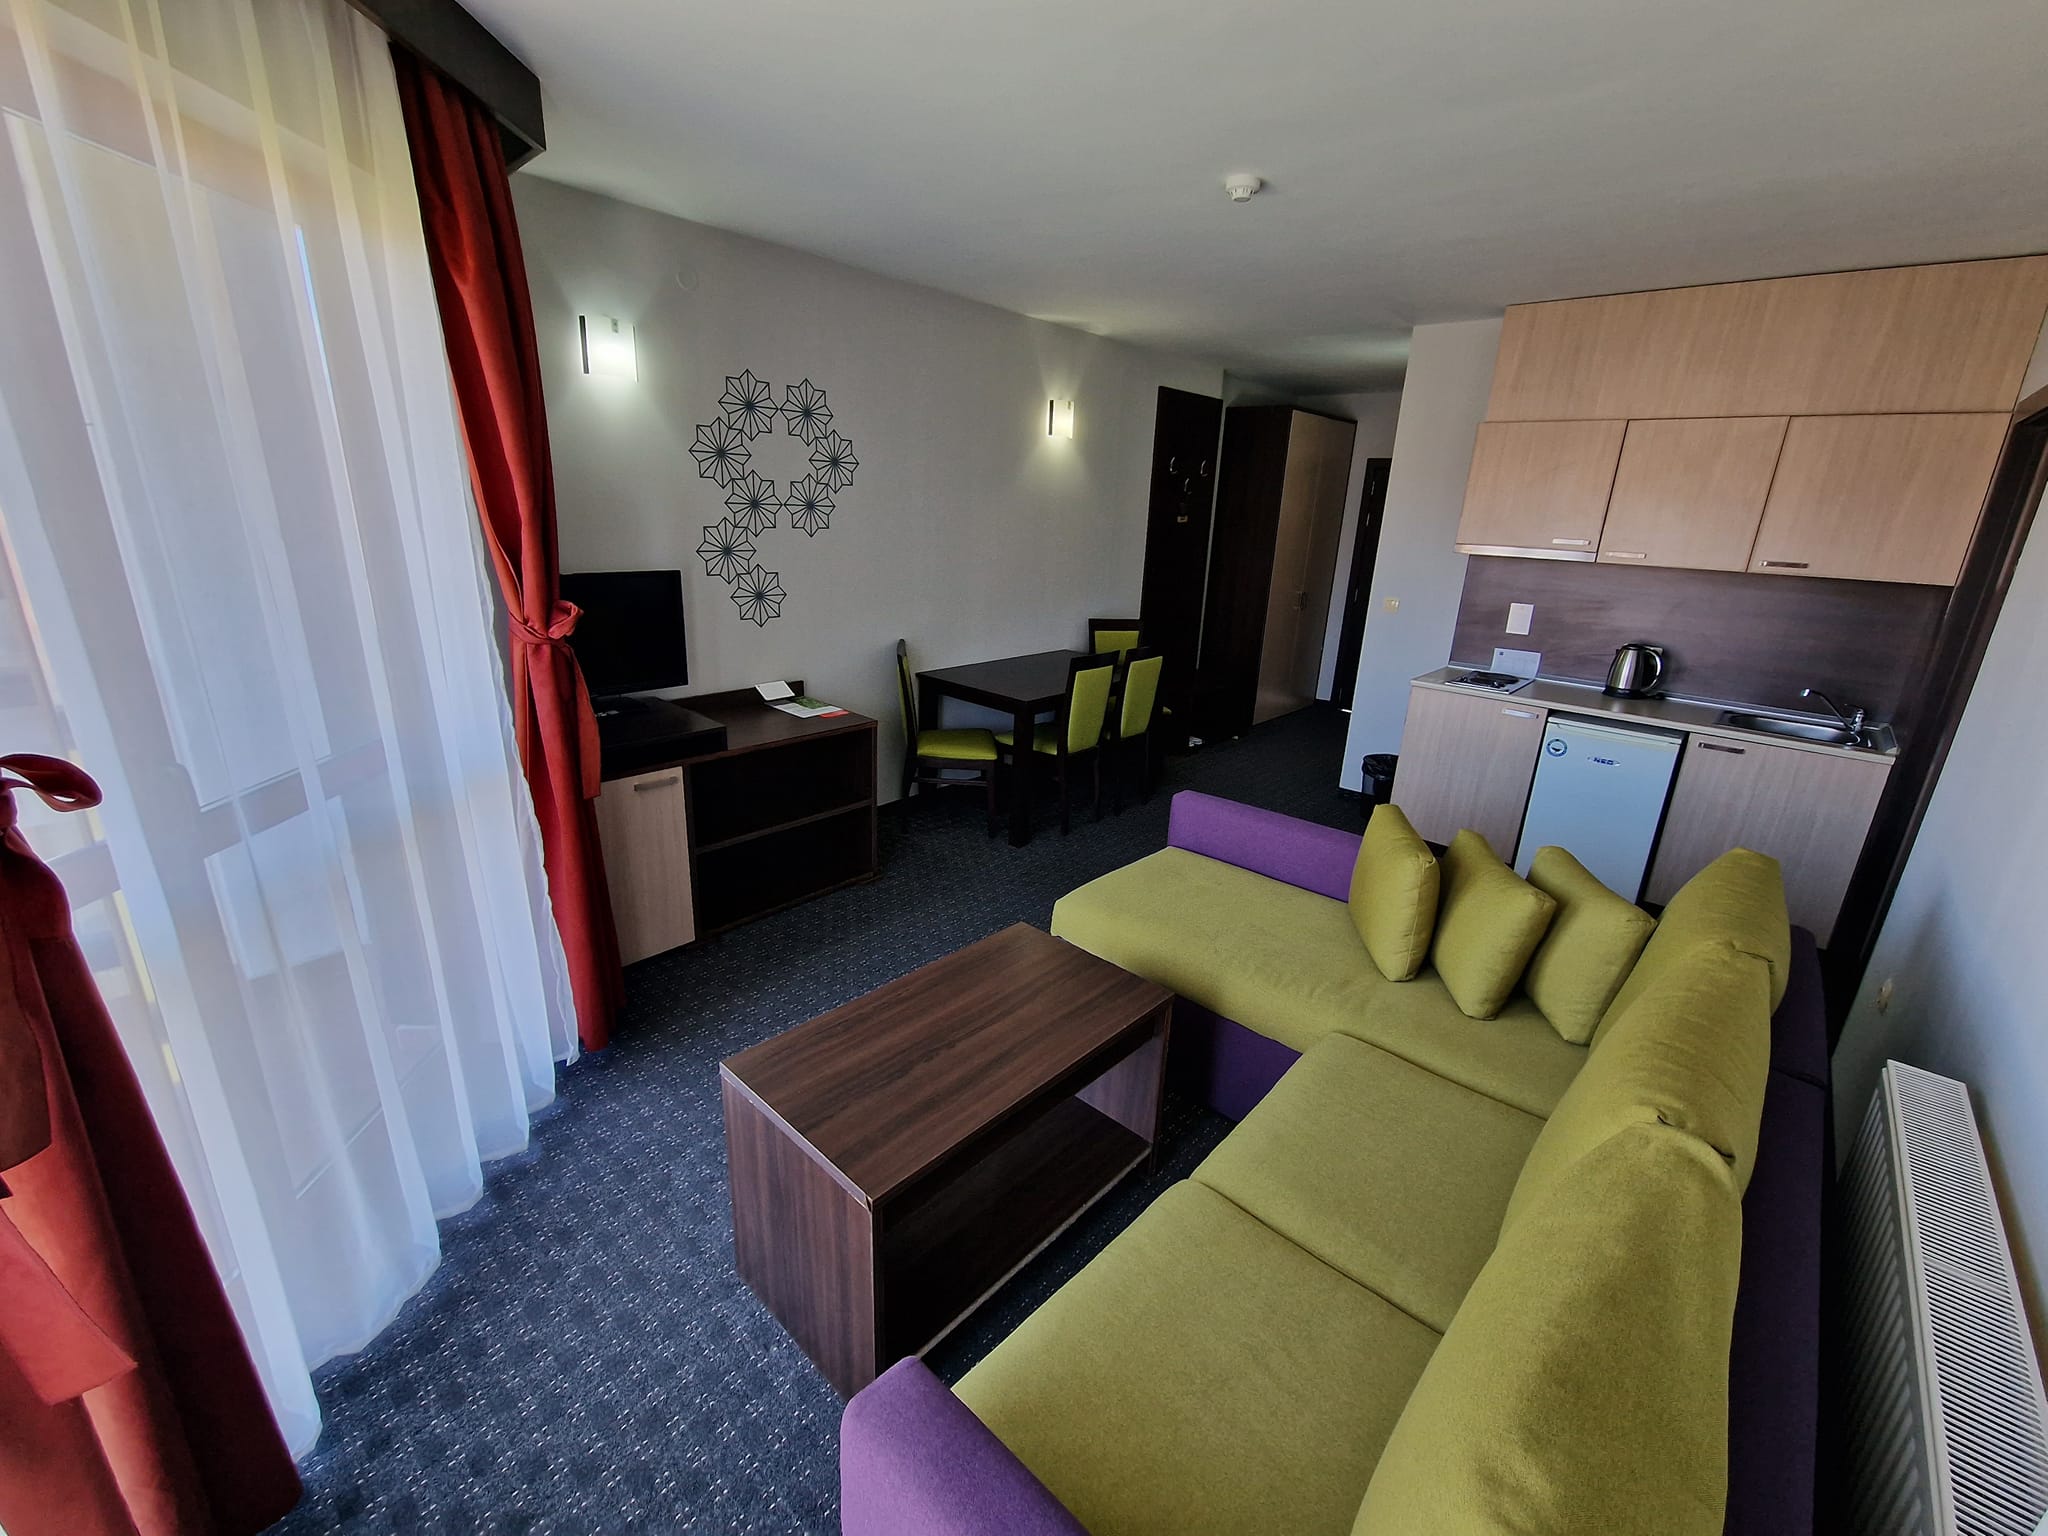 Двустаен апартамент в Банско до Хотел Belvedere, 200 метра от ски лифта